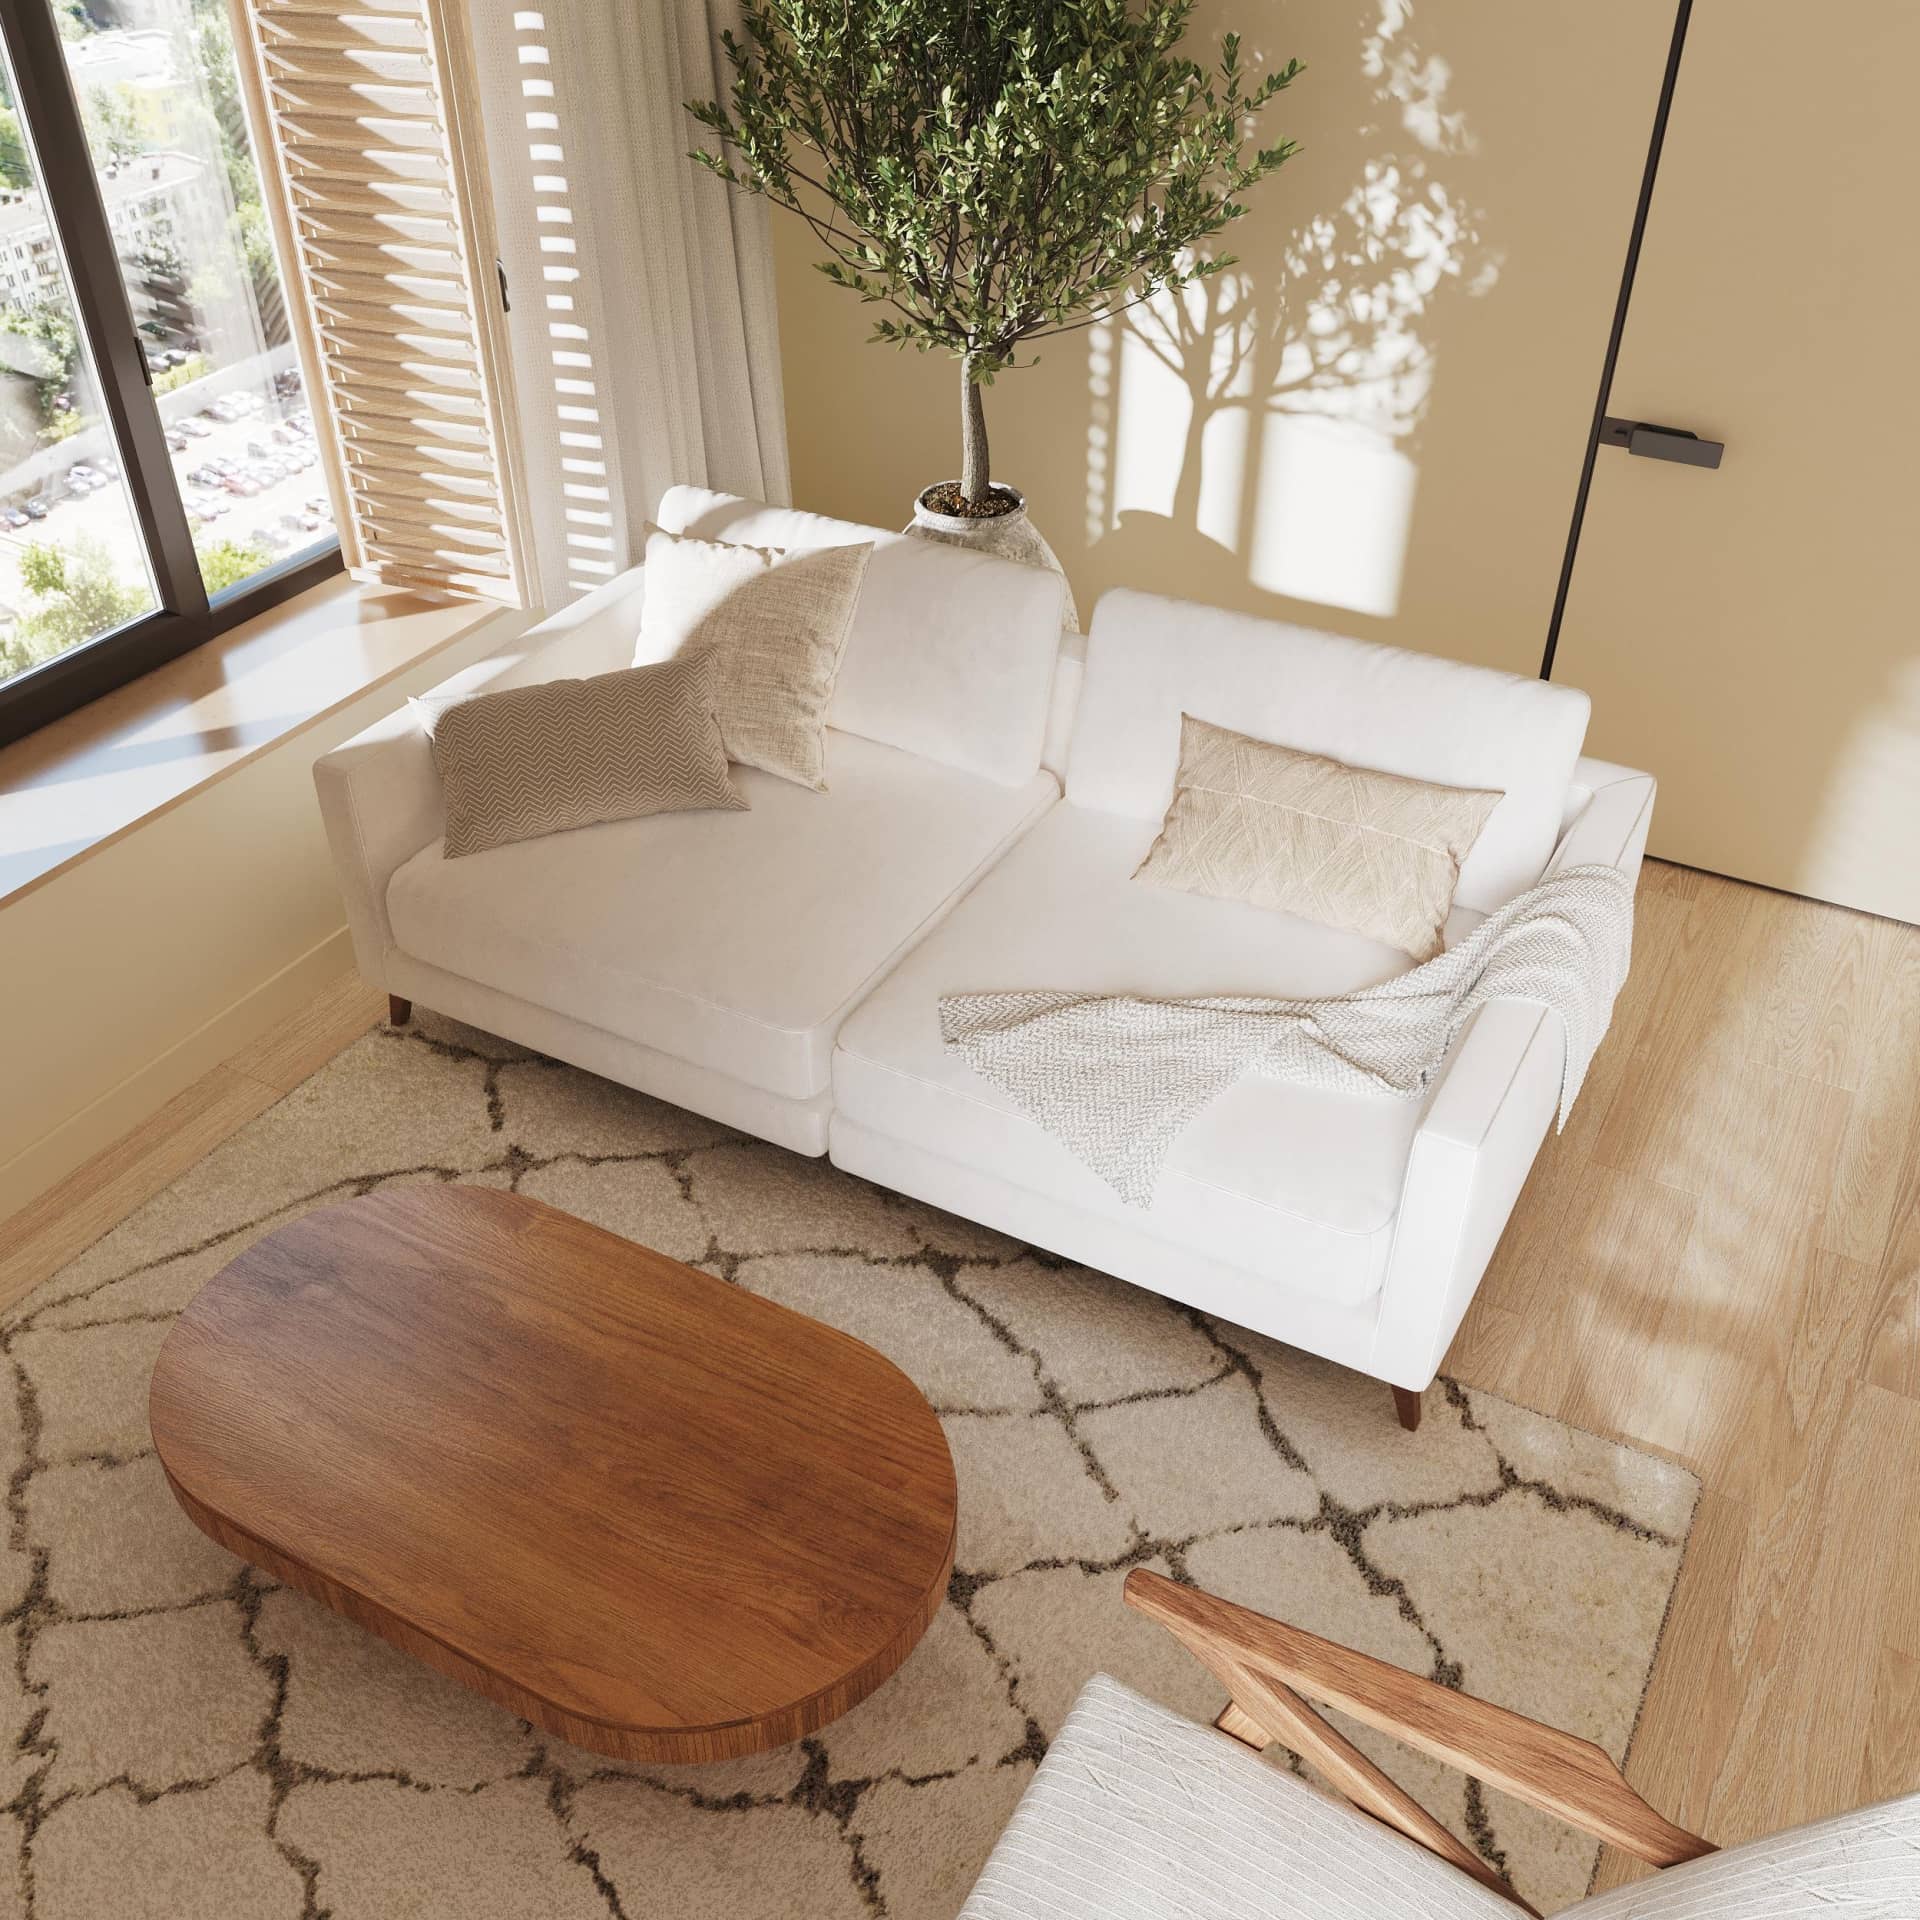 Зона отдыха - широкий белый диван и массивный деревянный журнальный стол